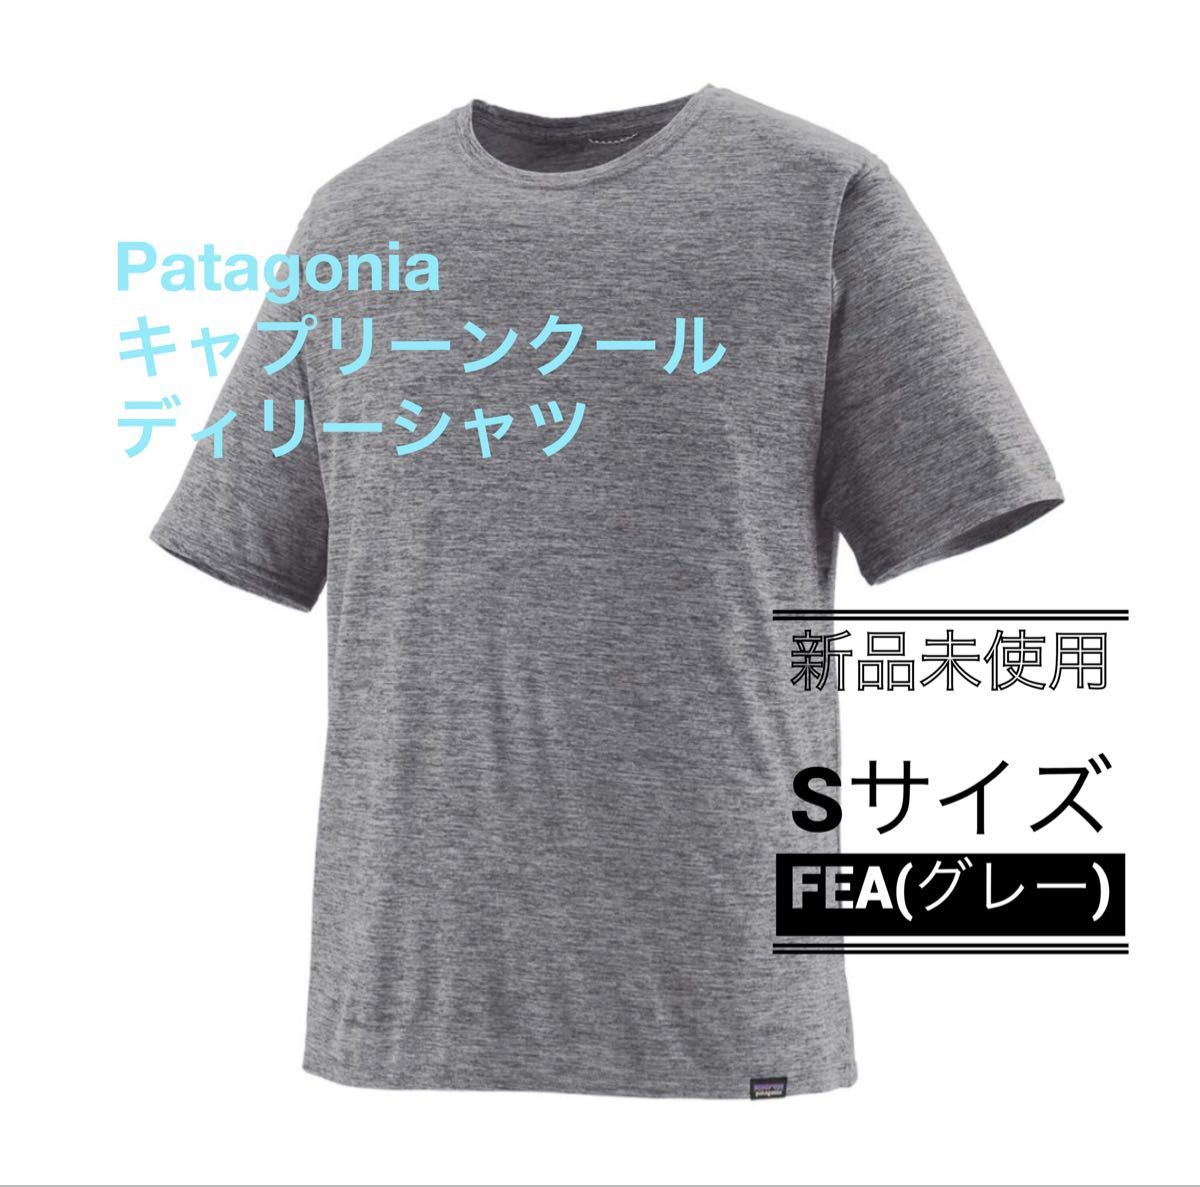 新品 S正規品 Patagonia メンズキャプリーンクールデイリーシャツ FEA(グレー) タグ付き パタゴニア